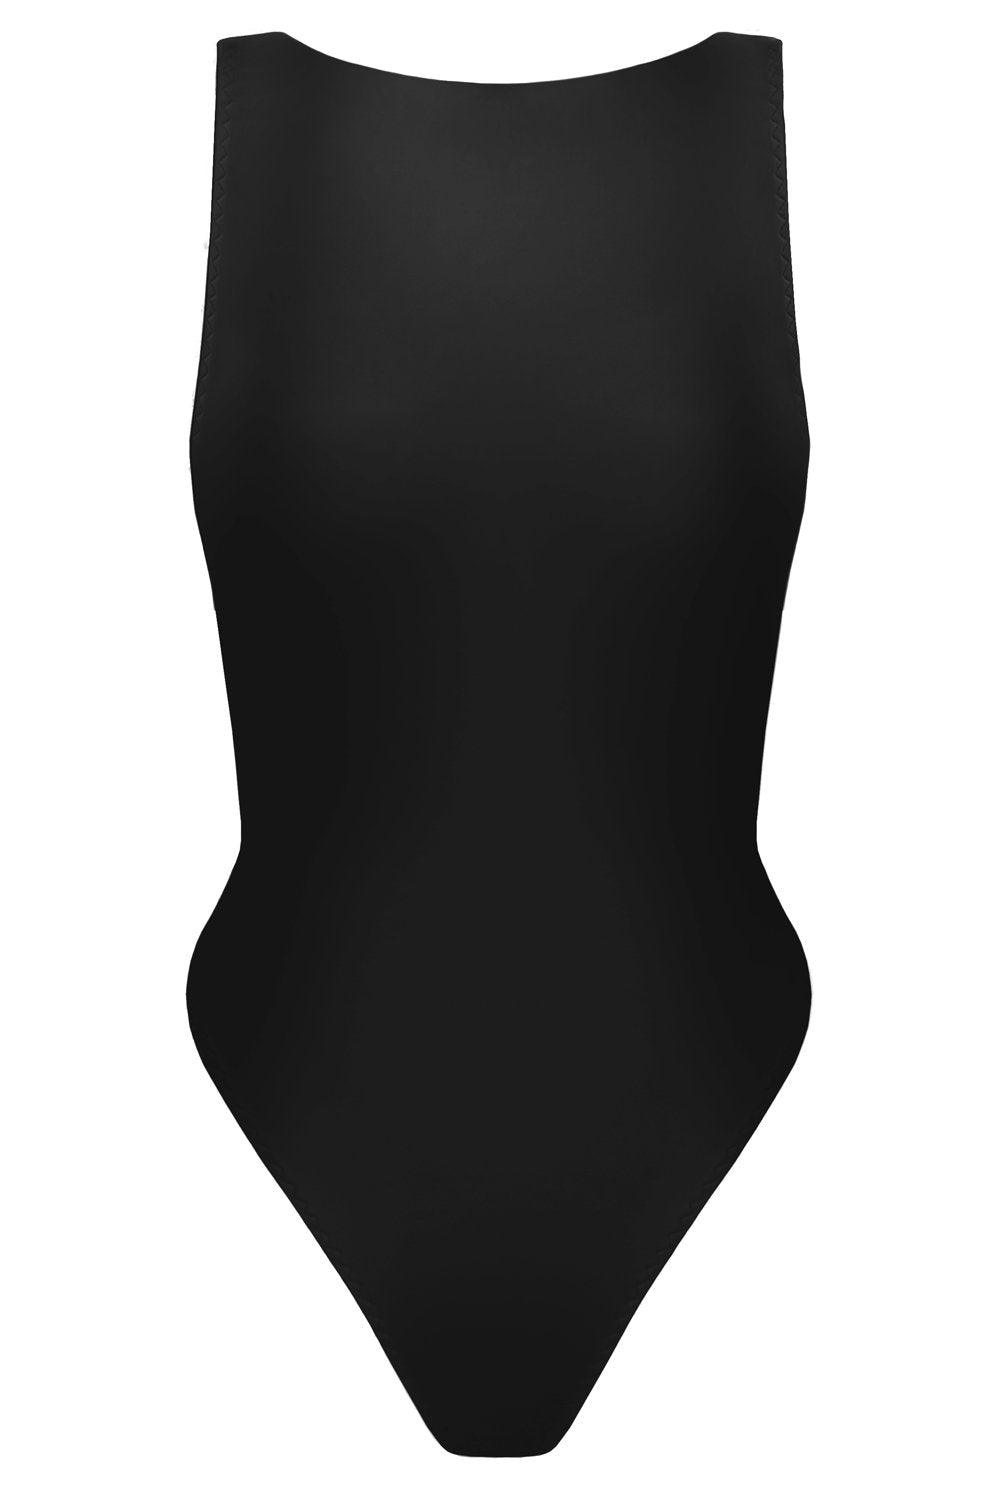 Vertex Black swimsuit - yesUndress